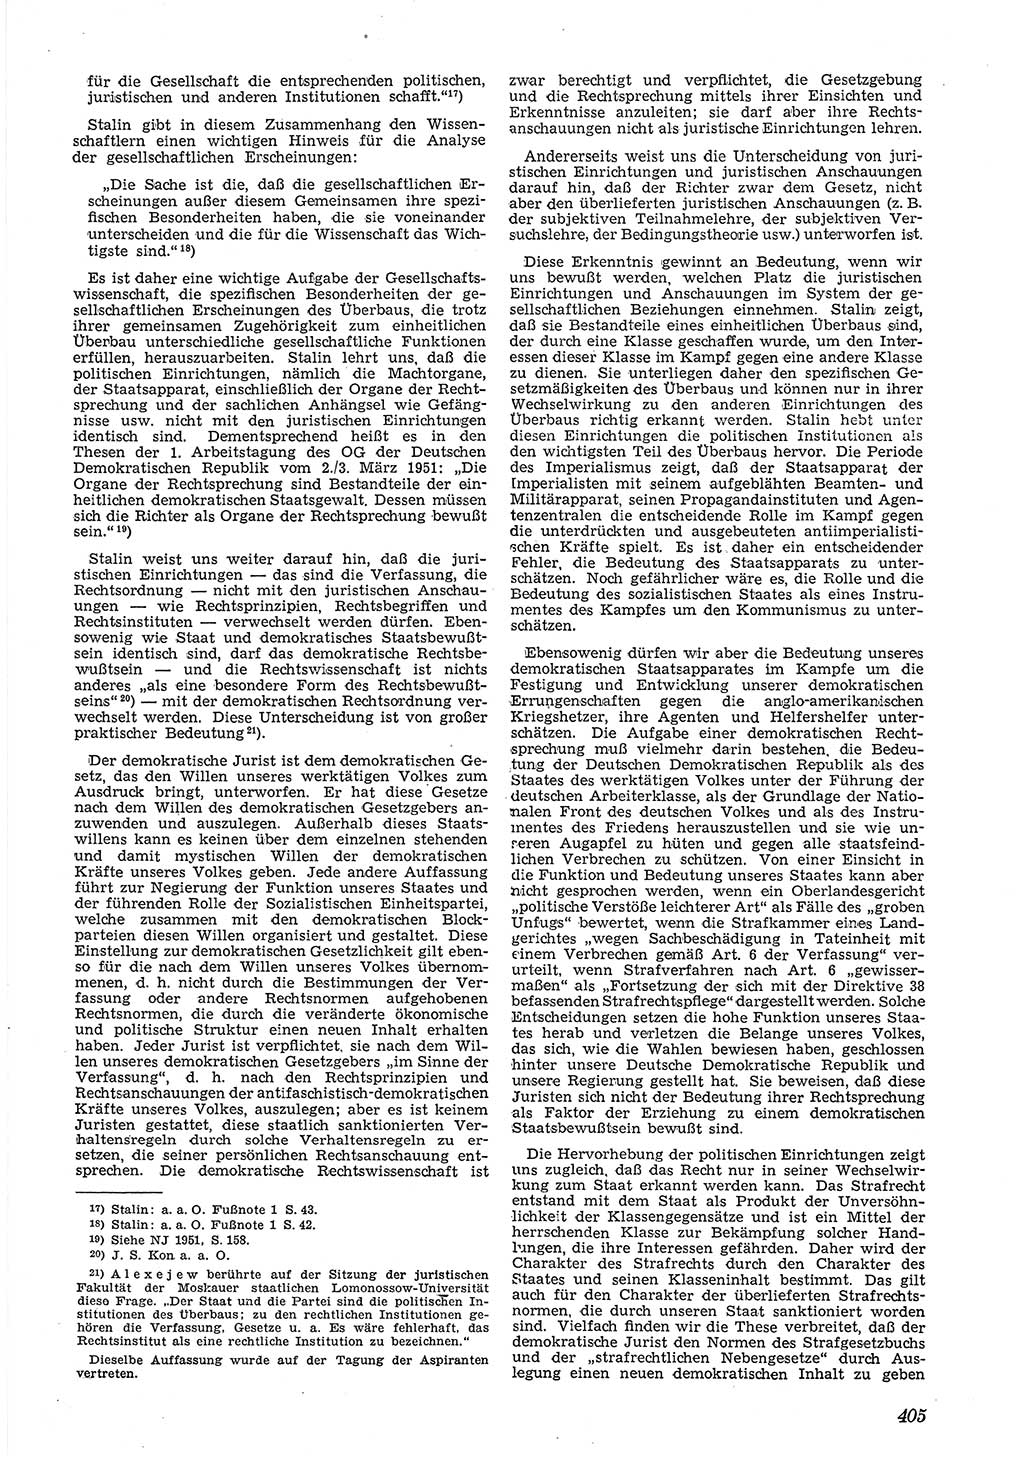 Neue Justiz (NJ), Zeitschrift für Recht und Rechtswissenschaft [Deutsche Demokratische Republik (DDR)], 5. Jahrgang 1951, Seite 405 (NJ DDR 1951, S. 405)